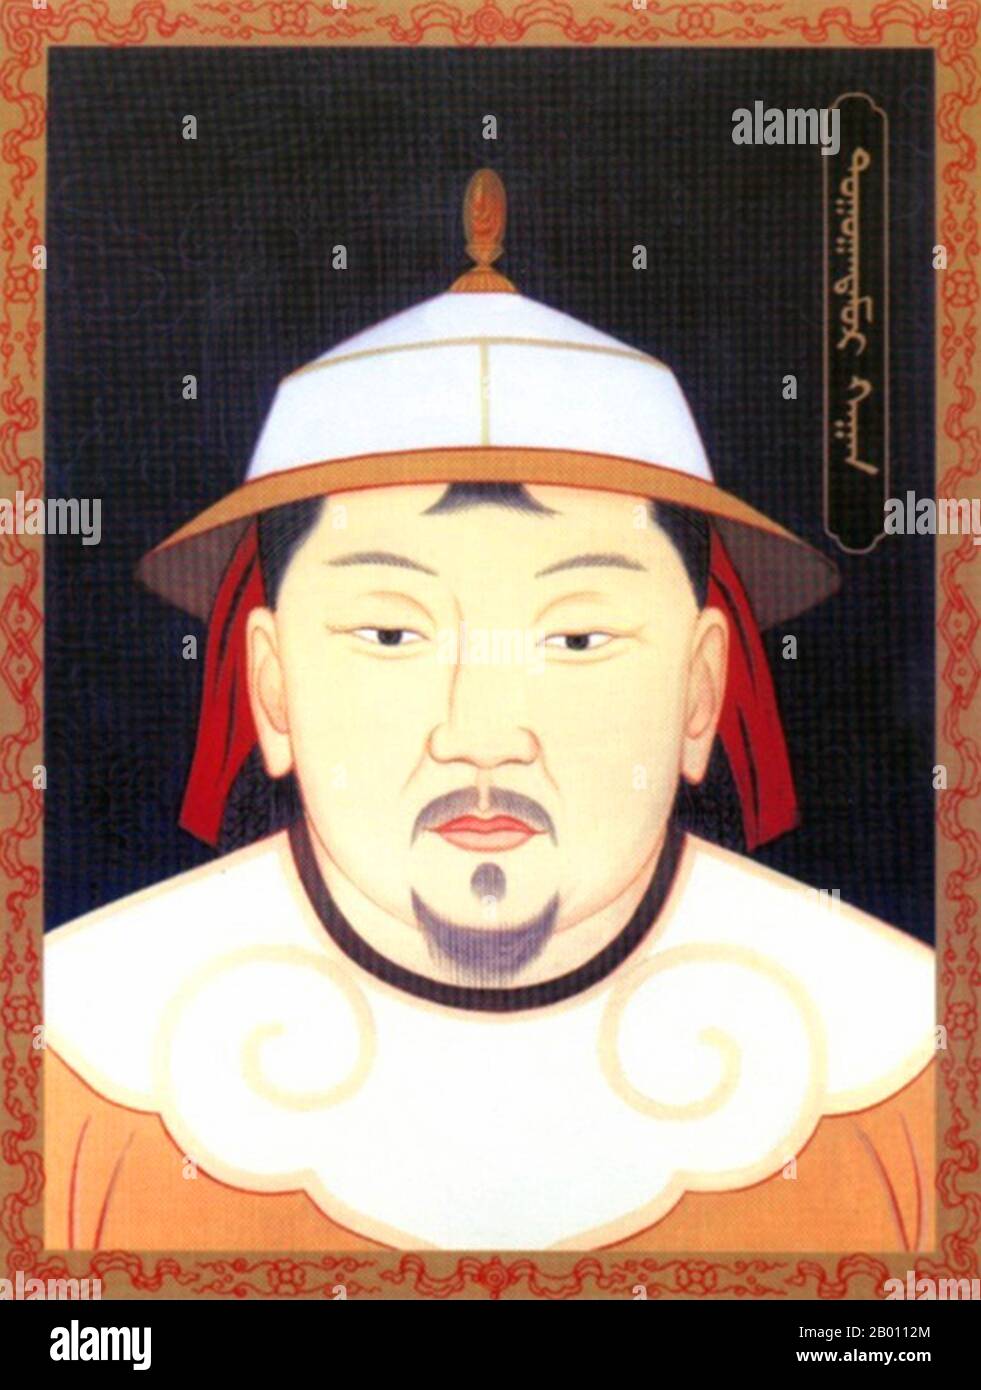 Mongolia/Cina: Ukhaantu Khan (r.1333-1370), 15° e ultimo Khagan dell'Impero Mongolo; 10° e ultimo imperatore Yuan Huizong, 20° secolo. Toghun Temur, conosciuto anche come Ukhaantu Khan (25 maggio 1320 – 23 maggio 1370), è stato un figlio di Kusala che governò come Imperatore della dinastia Yuan, ed è considerato l'ultimo Khagan dell'Impero Mongolo. Durante gli ultimi anni del suo regno, i Mongoli perse il controllo effettivo sulla Cina per la dinastia Ming. Era uno studente buddista di Karmapas ed è considerato come una precedente incarnazione di Tai Situpa. Foto Stock